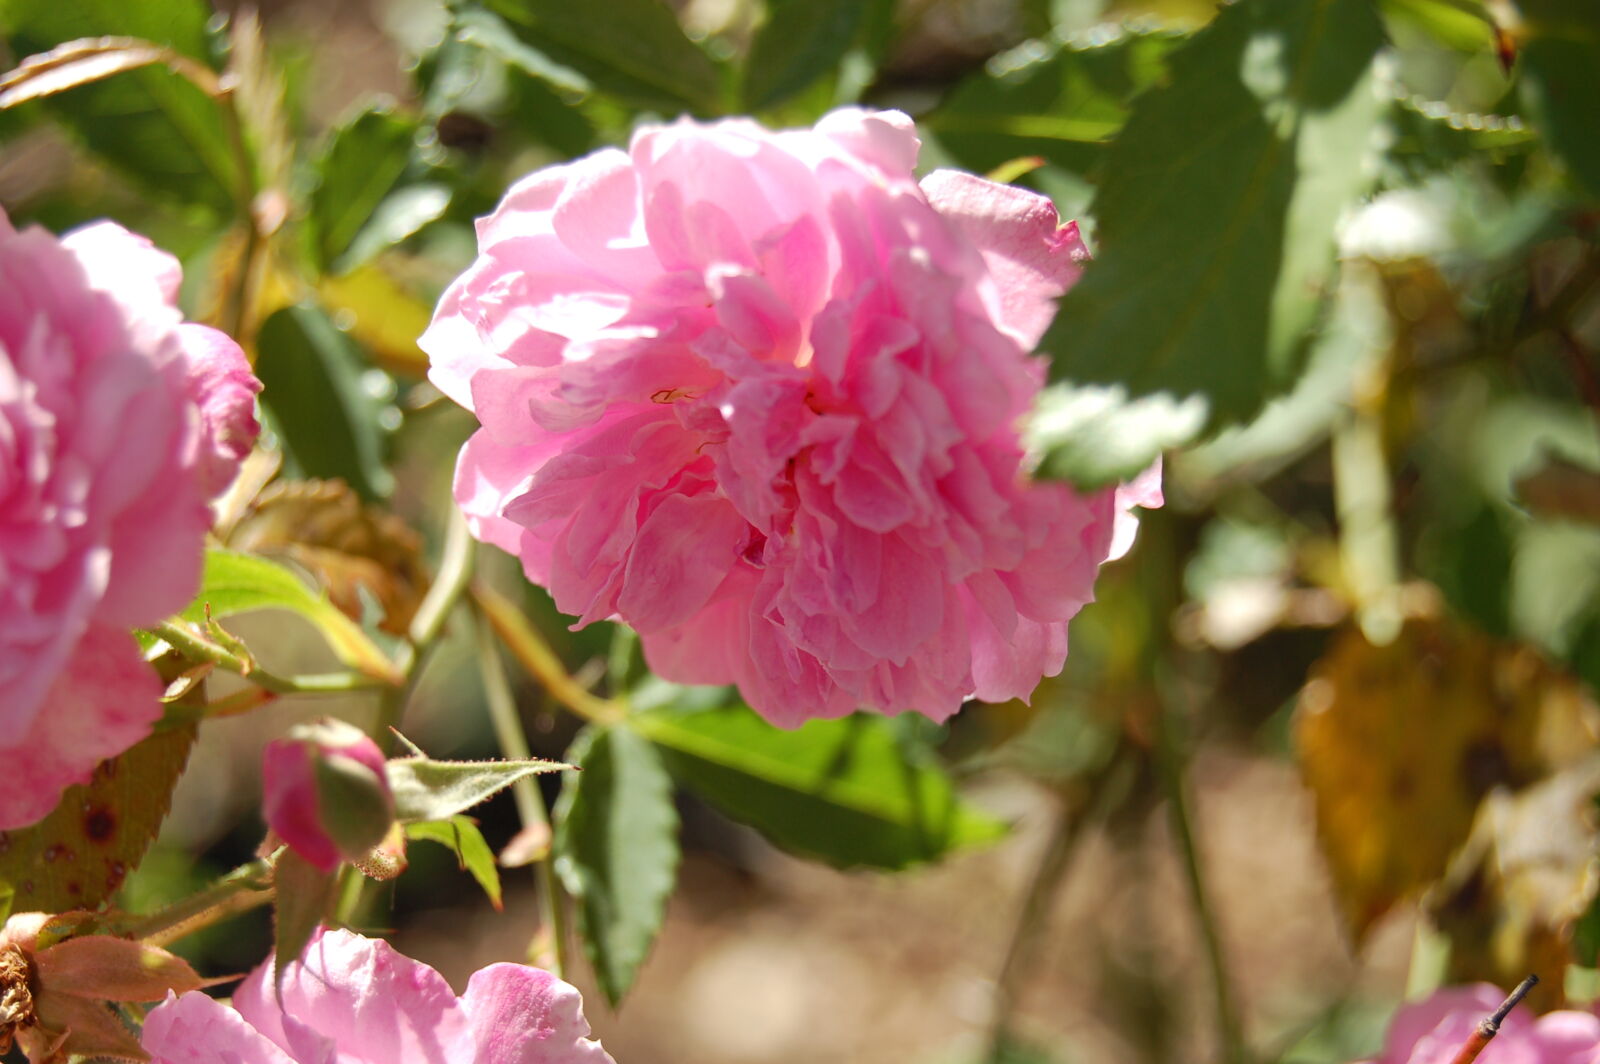 AF-S DX Zoom-Nikkor 18-55mm f/3.5-5.6G ED sample photo. Flower, garden, pink, flower photography